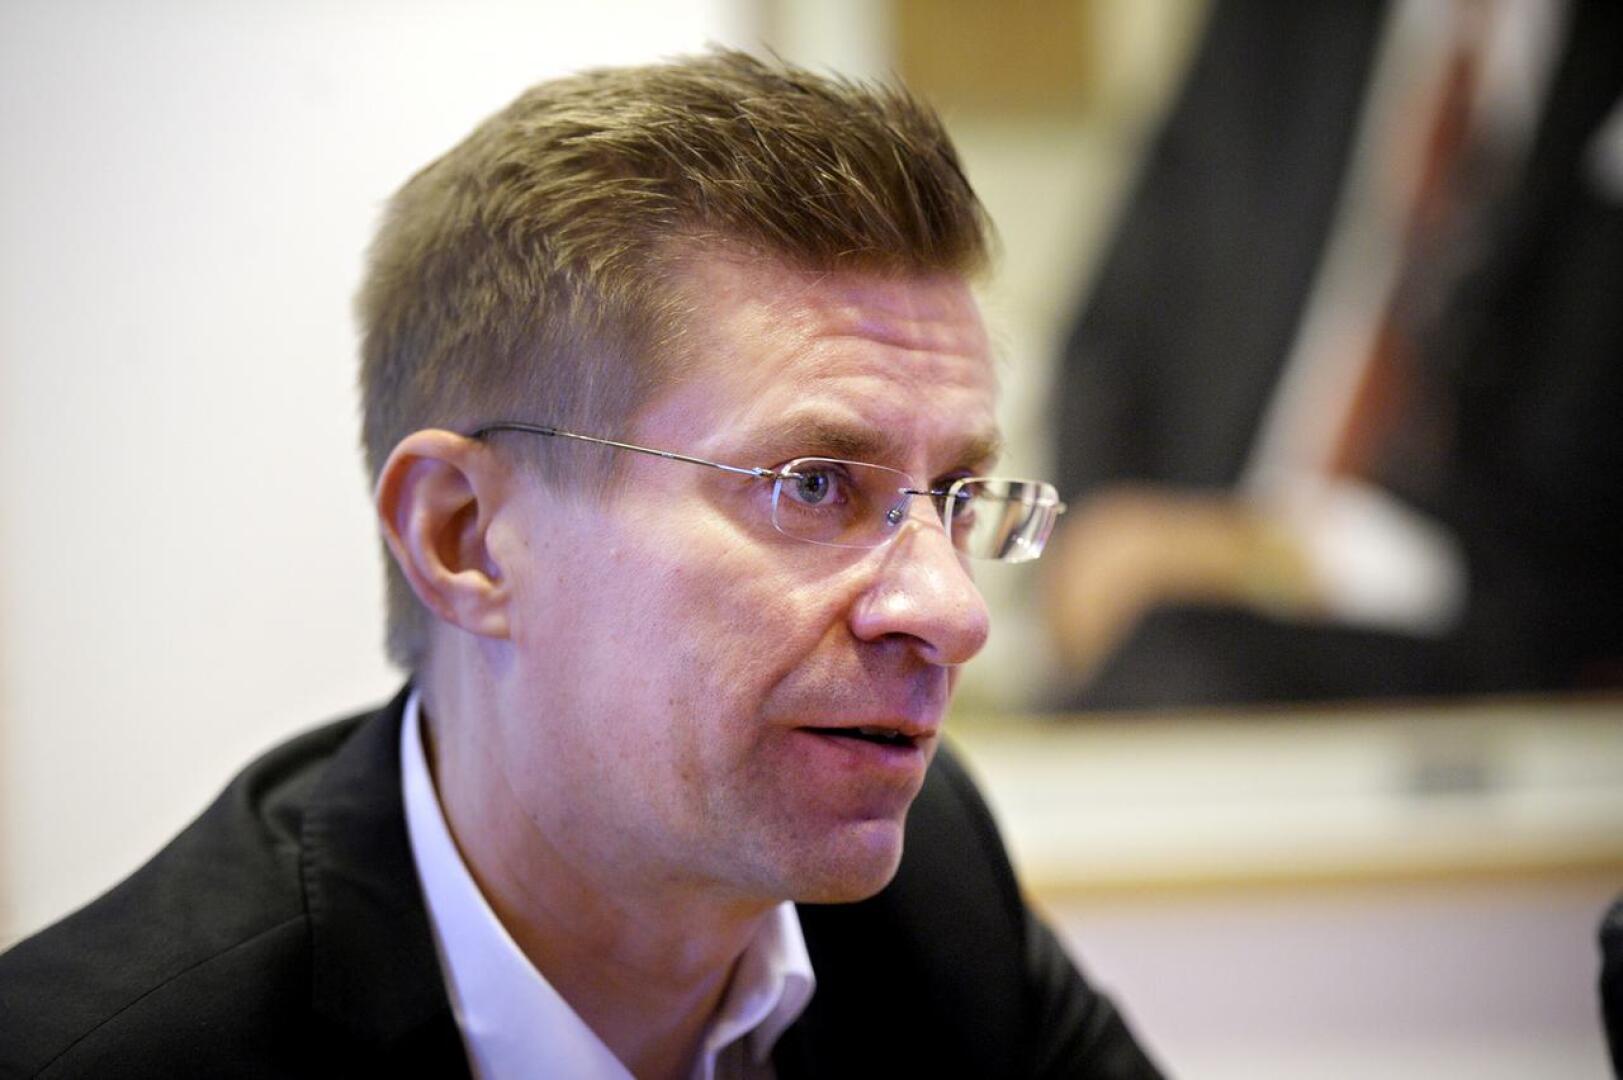 KPO:n market-toimialajohtaja Antti Paananen ei usko laajamittaiseen tavarapulaan joulumyynnissä. "Siellä ja täällä" voi puutteita kuitenkin esiintyä.